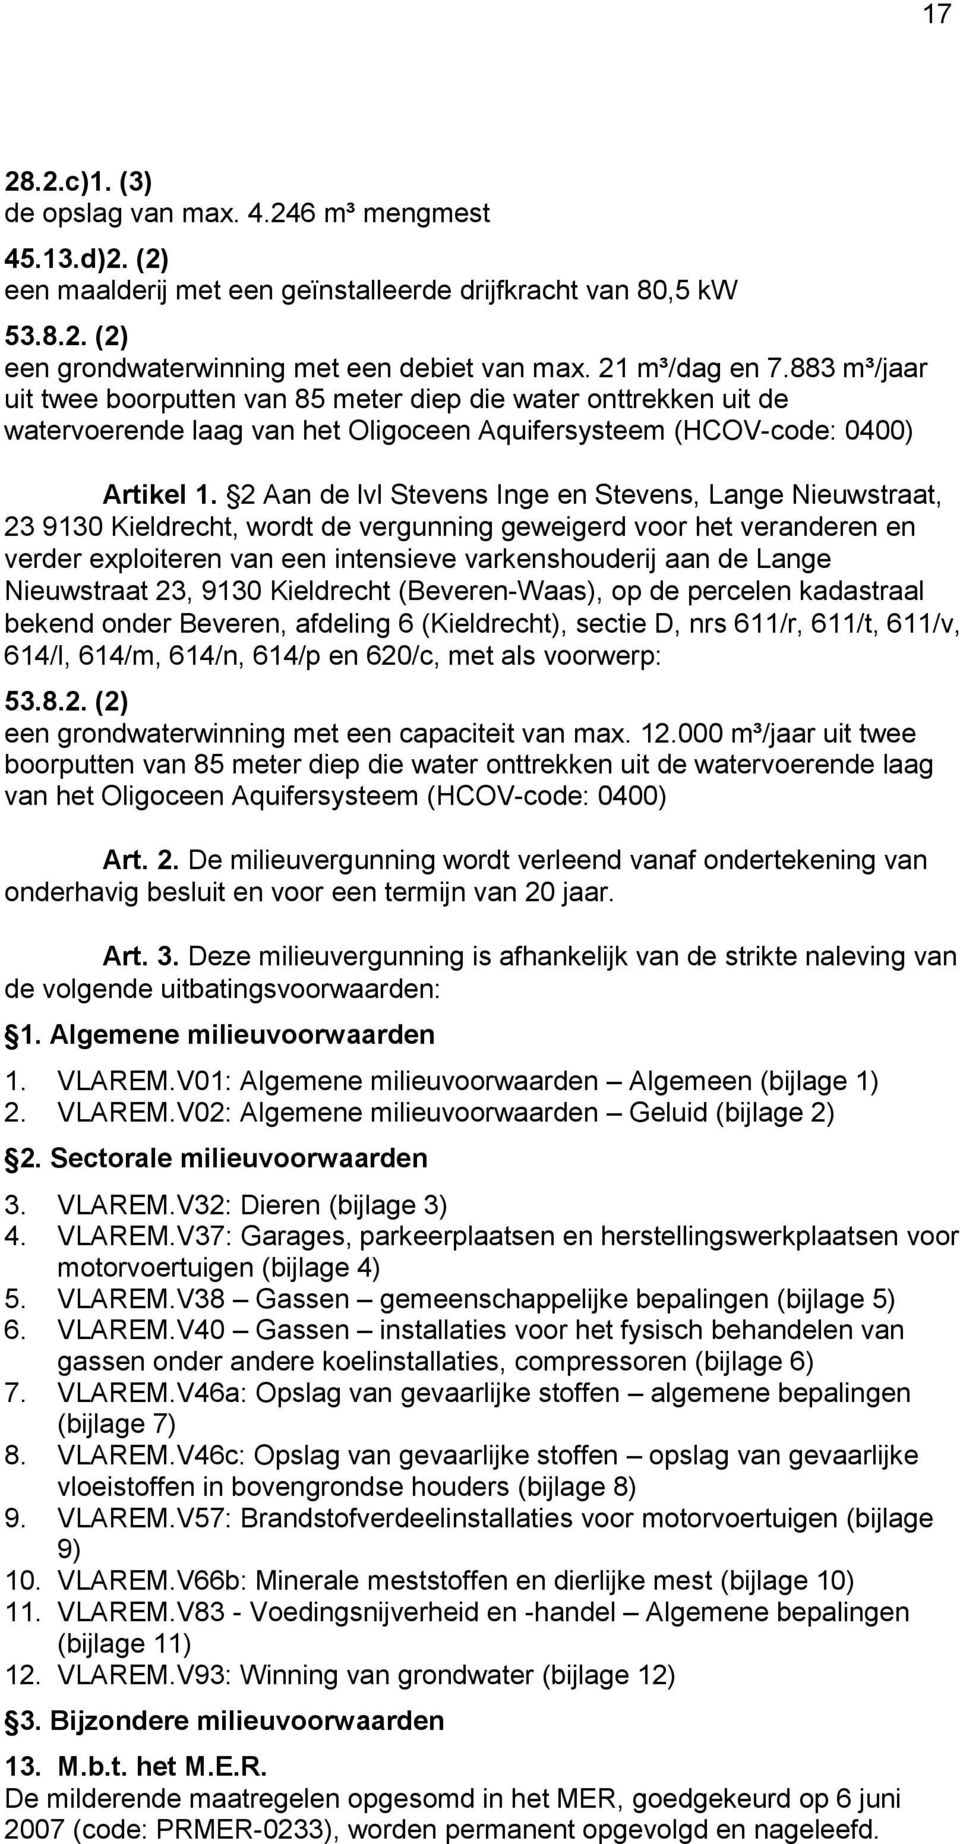 2 Aan de lvl Stevens Inge en Stevens, Lange Nieuwstraat, 23 9130 Kieldrecht, wordt de vergunning geweigerd voor het veranderen en verder exploiteren van een intensieve varkenshouderij aan de Lange